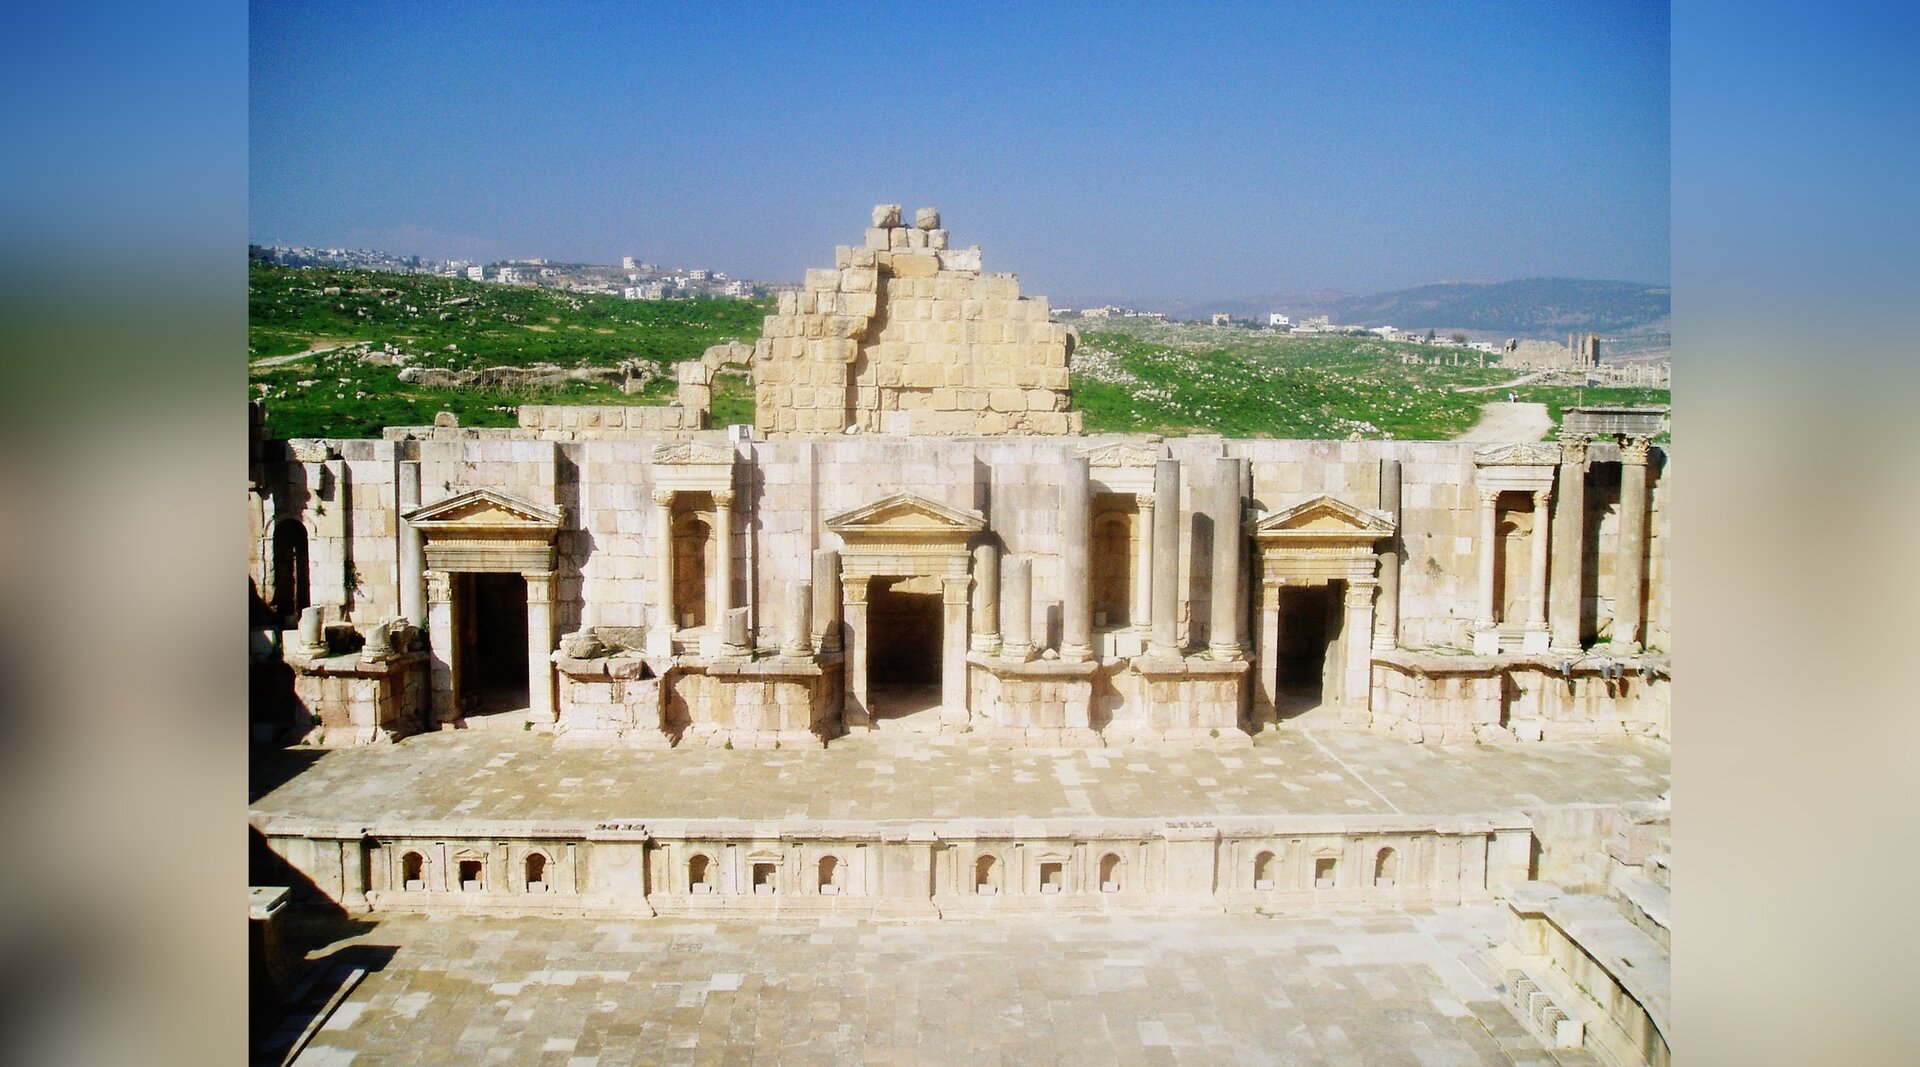 Zdjęcie przedstawia starożytną budowlę teatralną. Ukazana jest kamienna scena przypominająca budynek z trzema wejściami.